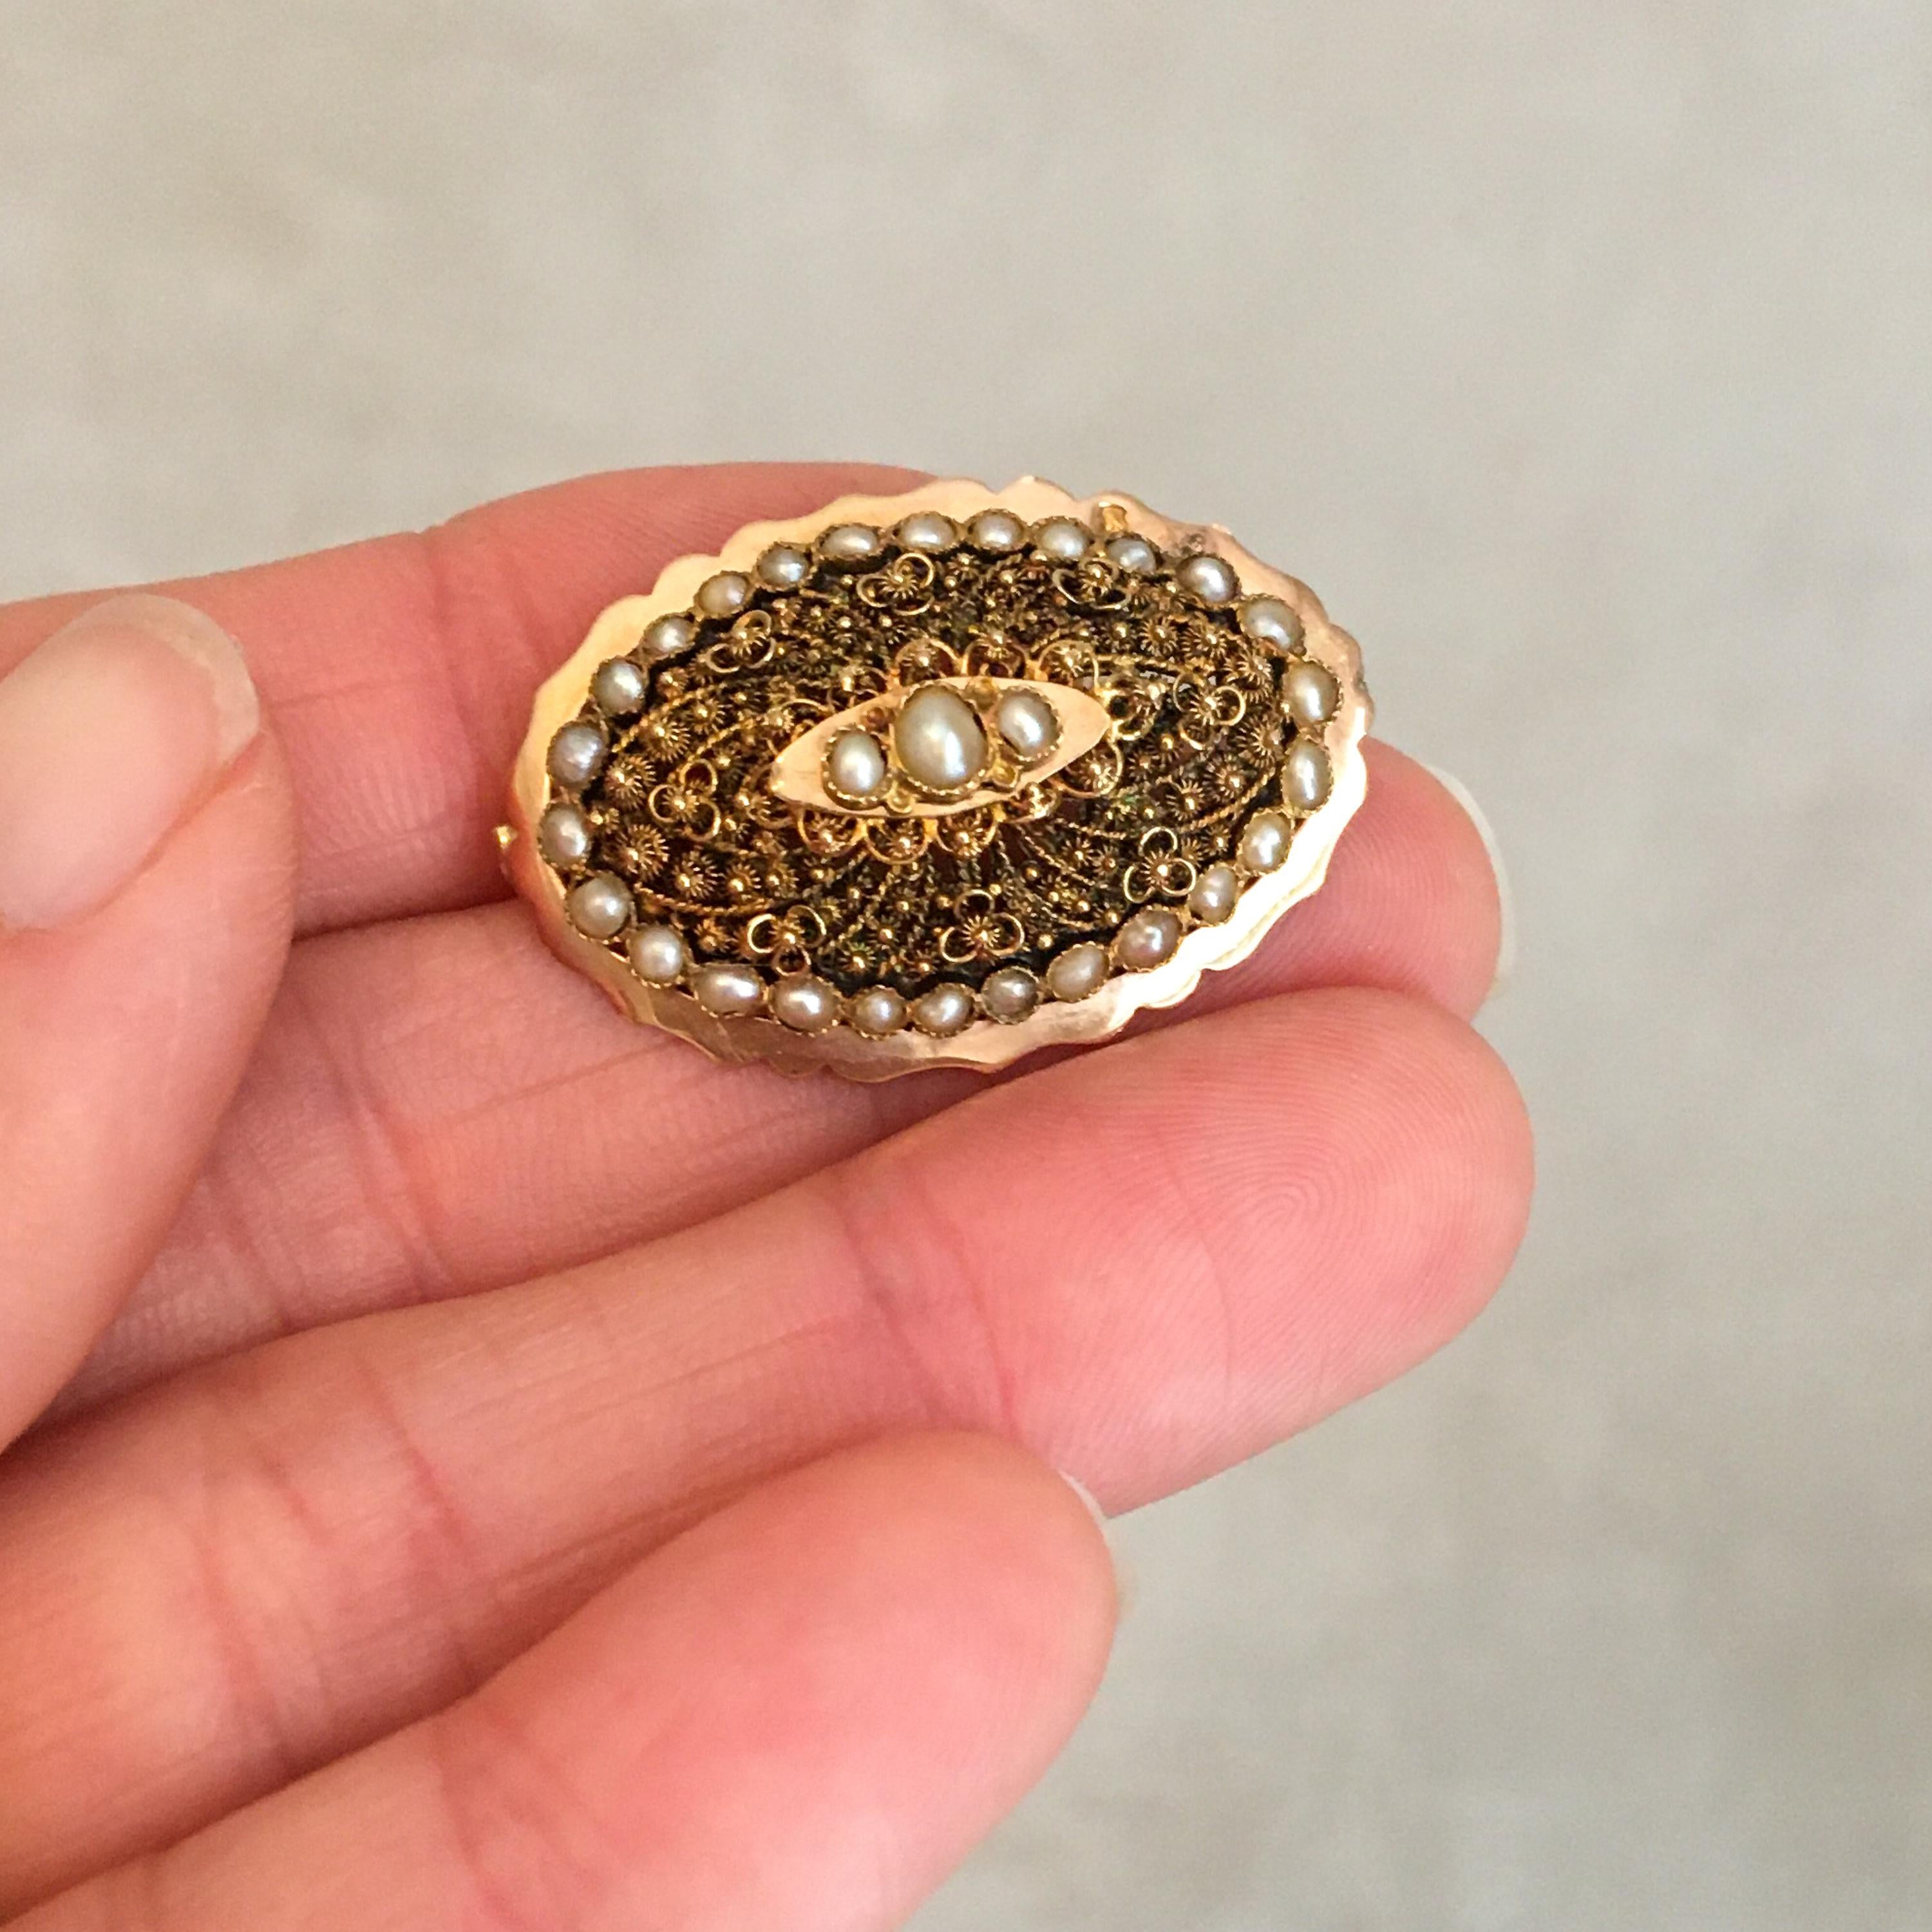 Il s'agit d'une broche ancienne en or jaune 18 carats du 19e siècle, sertie de vingt-neuf perles de rocaille lustrées. Cette magnifique broche présente un travail de cannetille très fin et détaillé, tandis que la bordure présente un motif festonné.